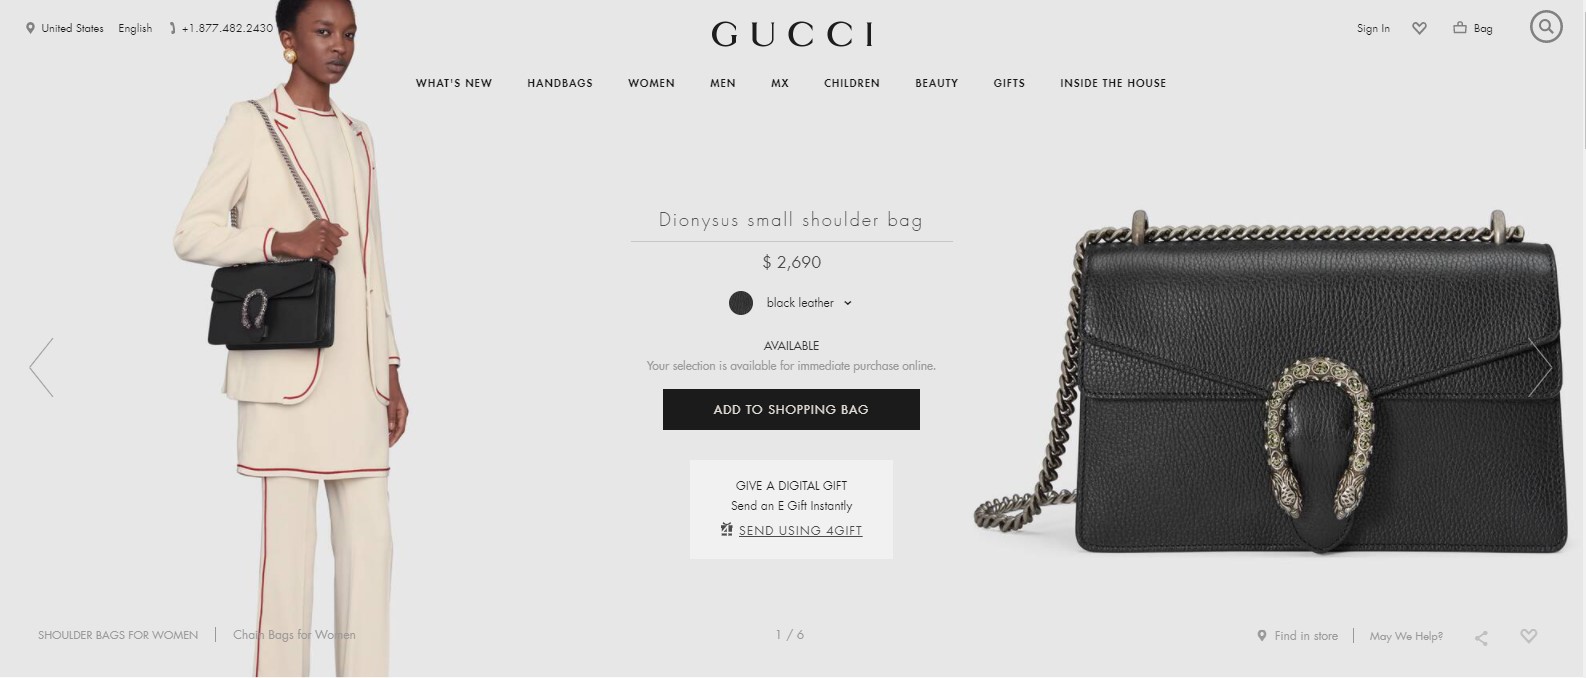 Chiếc Gucci Black Python Dinoysis Shoulder Bag có giá 2690 USD (khoảng 62 triệu đồng). Đây là sản phẩm được các ngôi sao châu Á khá yêu thích